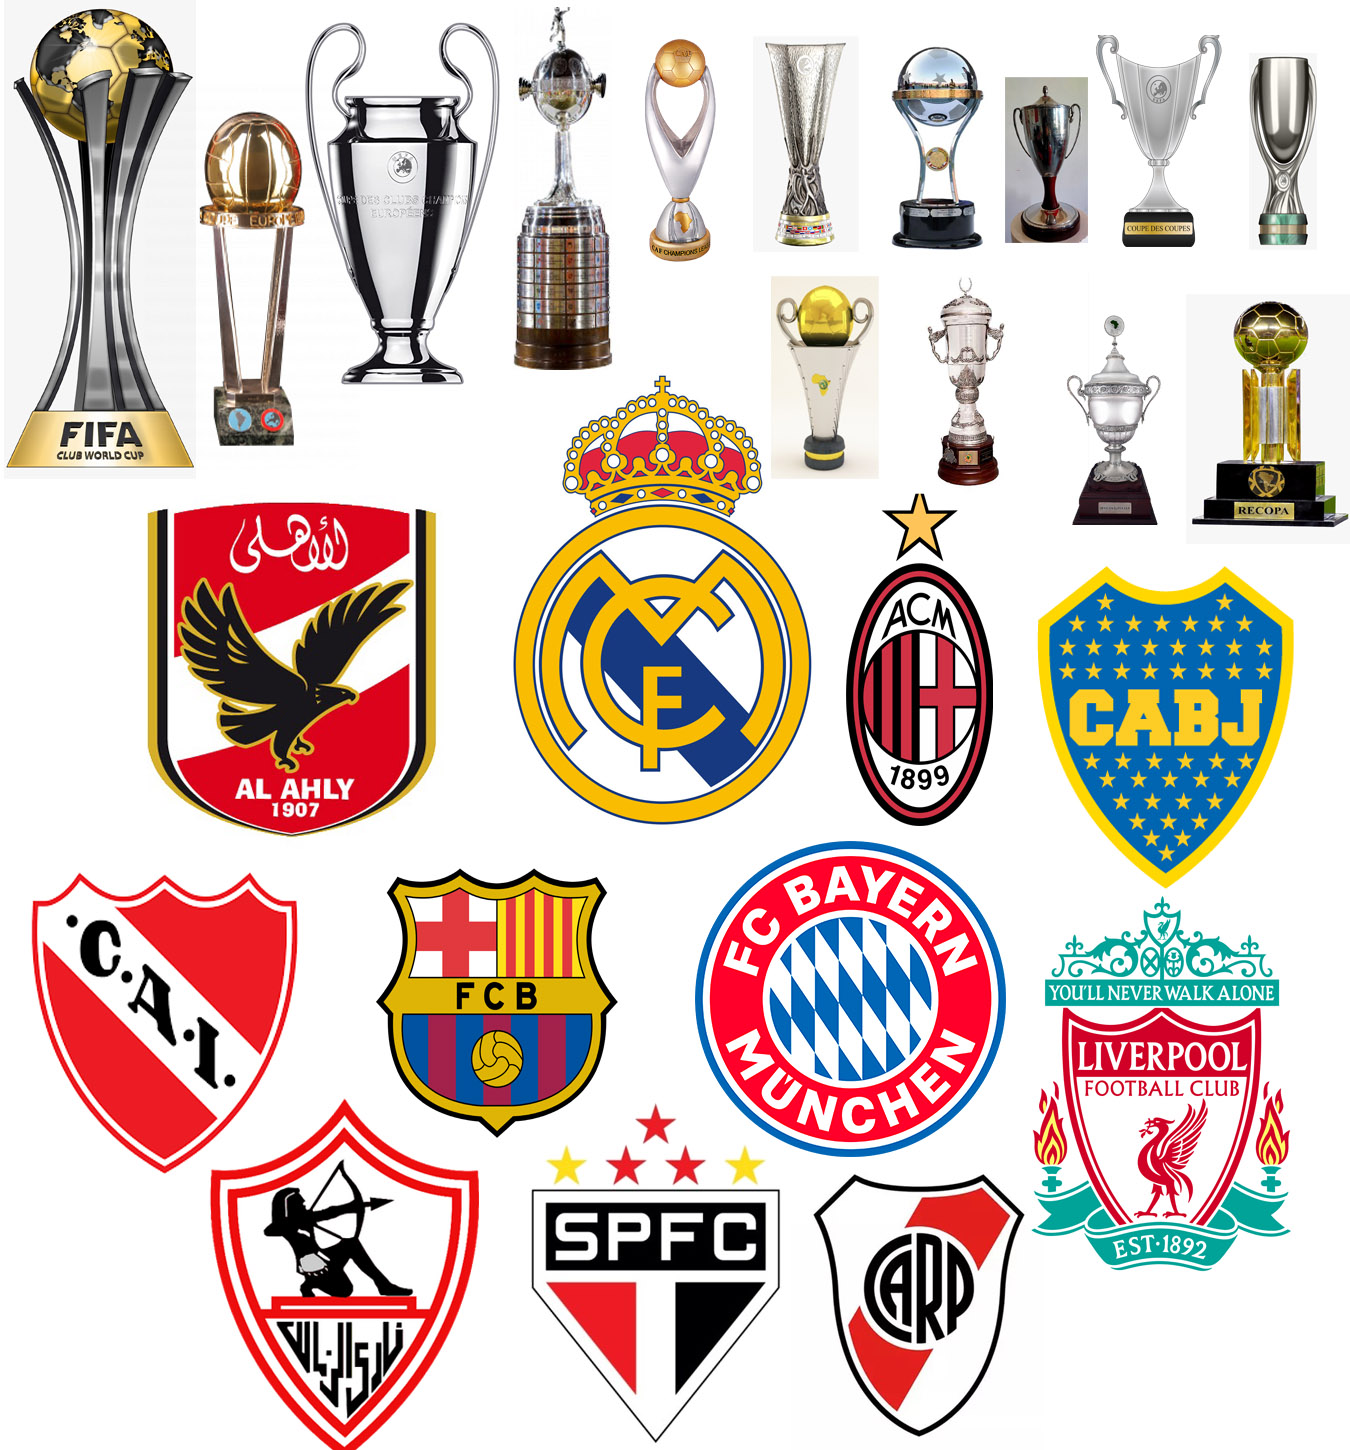 Bayern no top 10 de títulos internacionais; São Paulo é único brasileiro